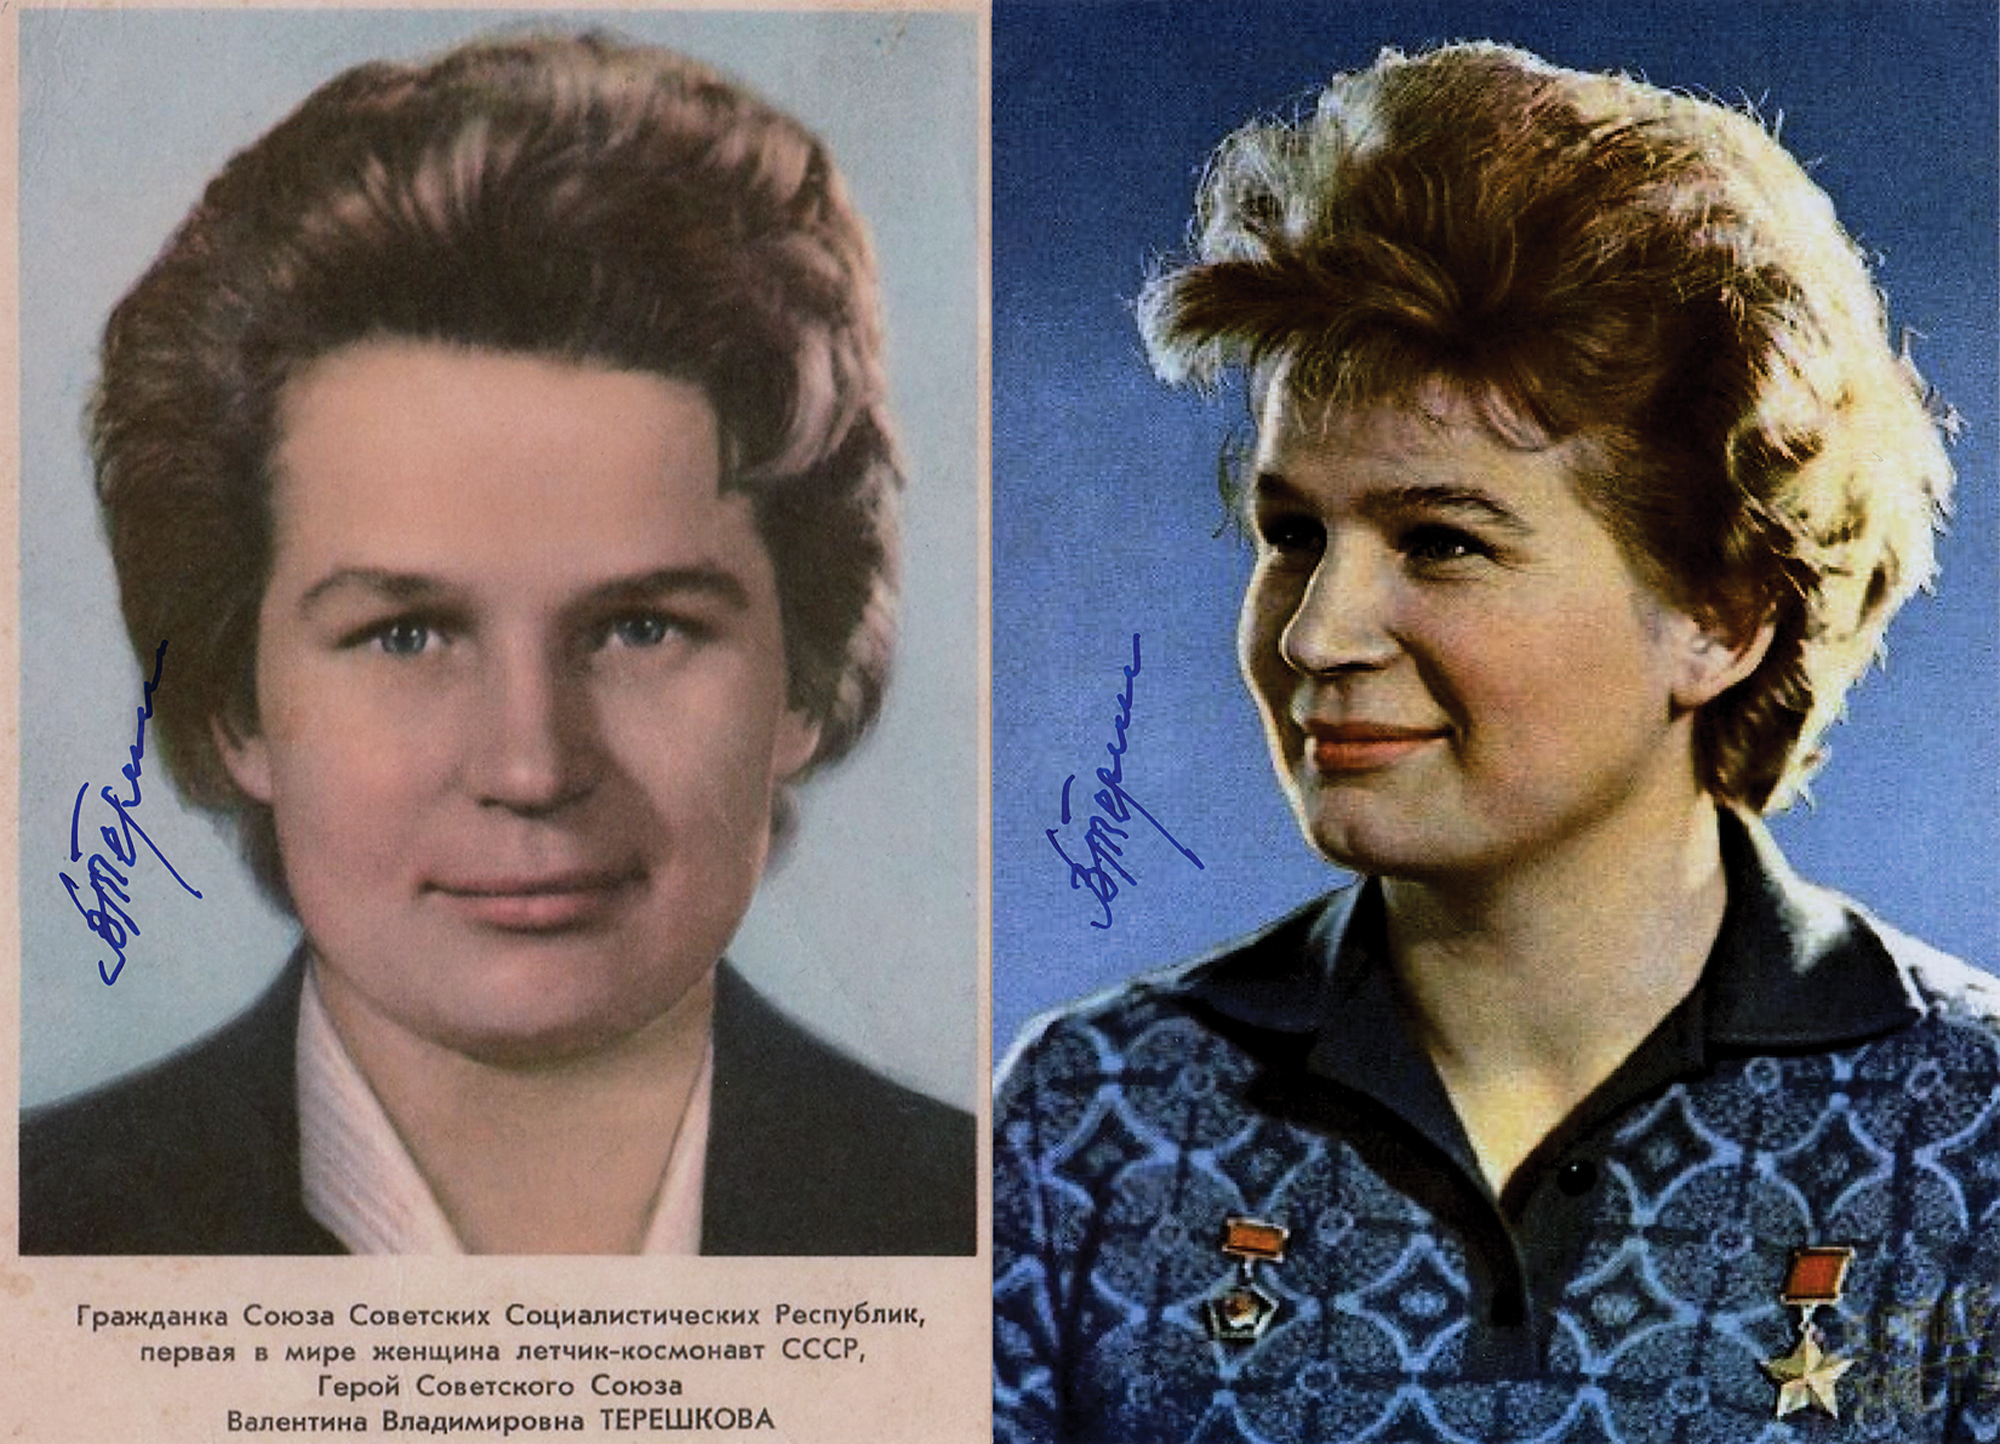 Lot #430 Valentina Tereshkova (2) Signed Photographs